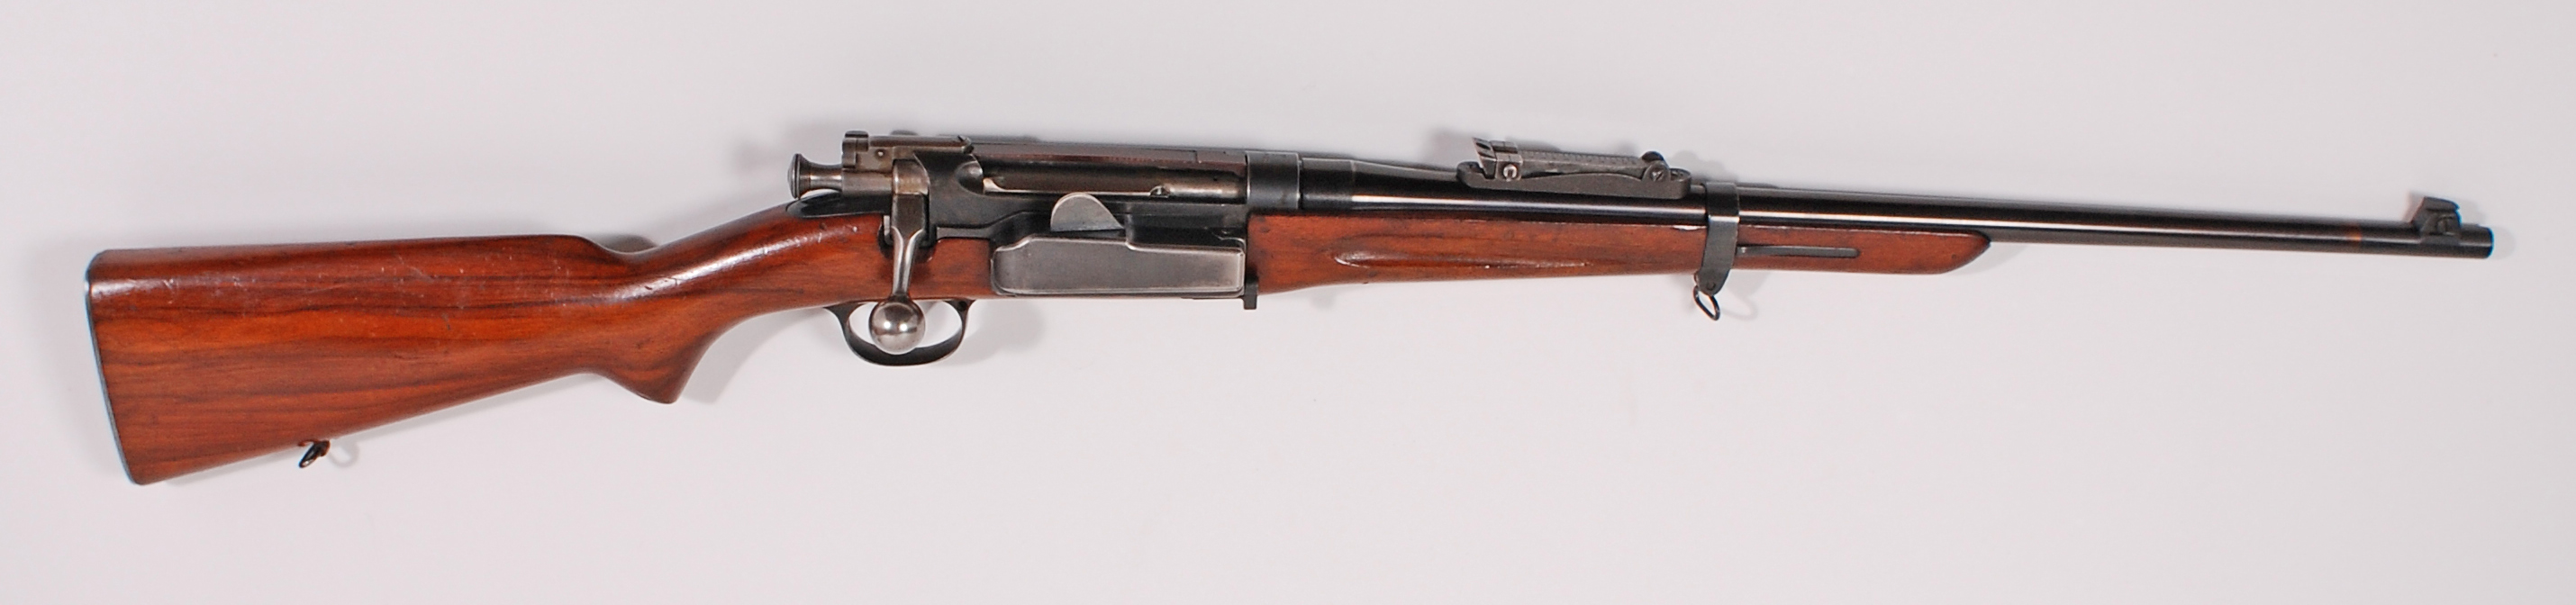 ./guns/rifle/bilder/Rifle-Kongsberg-Krag-M1906-913-1.jpg